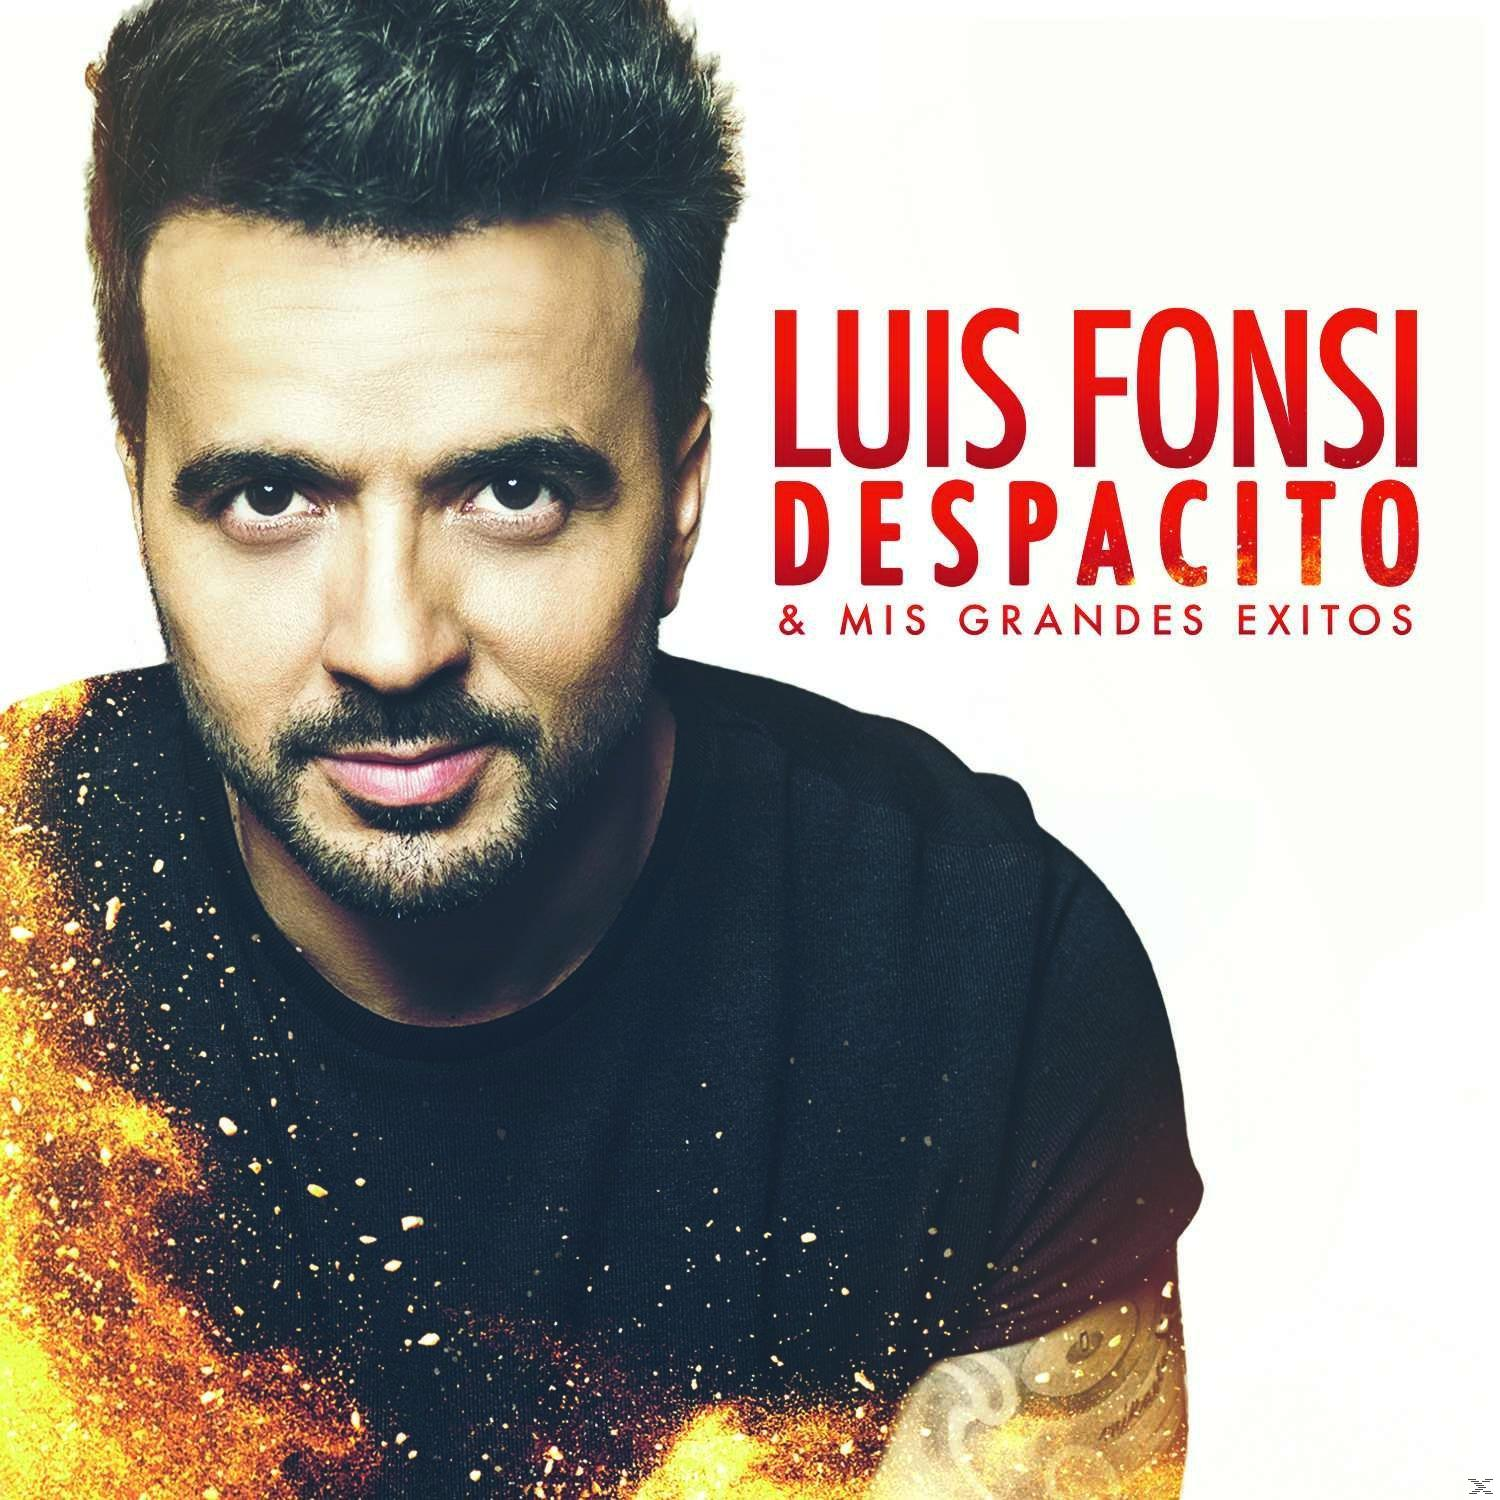 Grandes Mis Exitos Despacito Fonsi & - (CD) Luis -